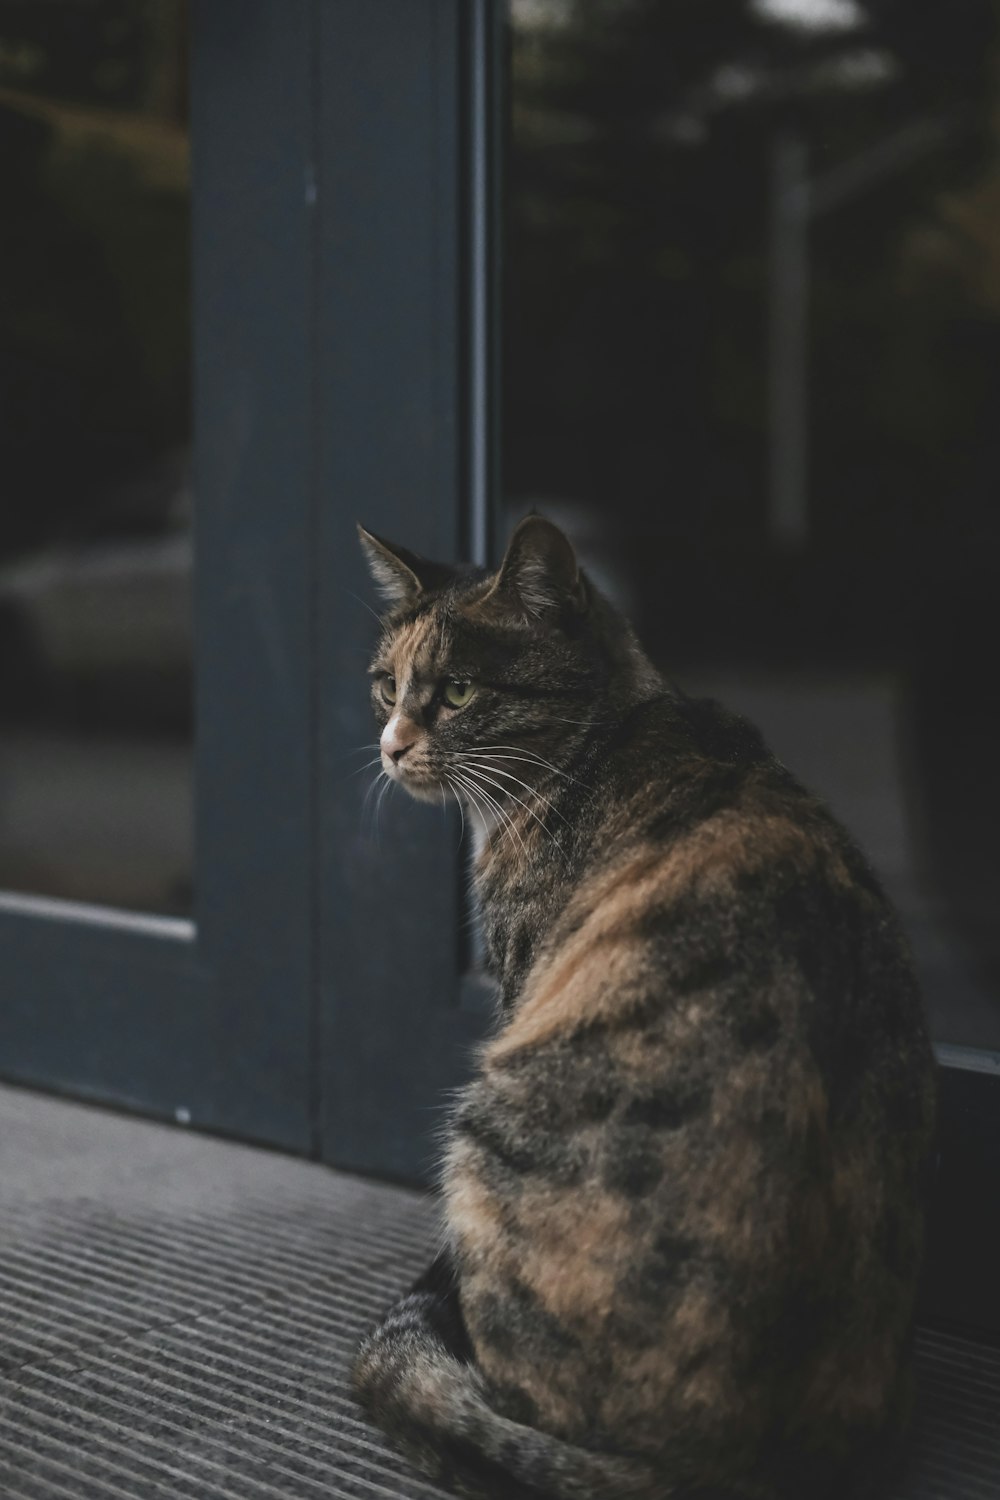 Gatto Calico vicino alla porta a vetri